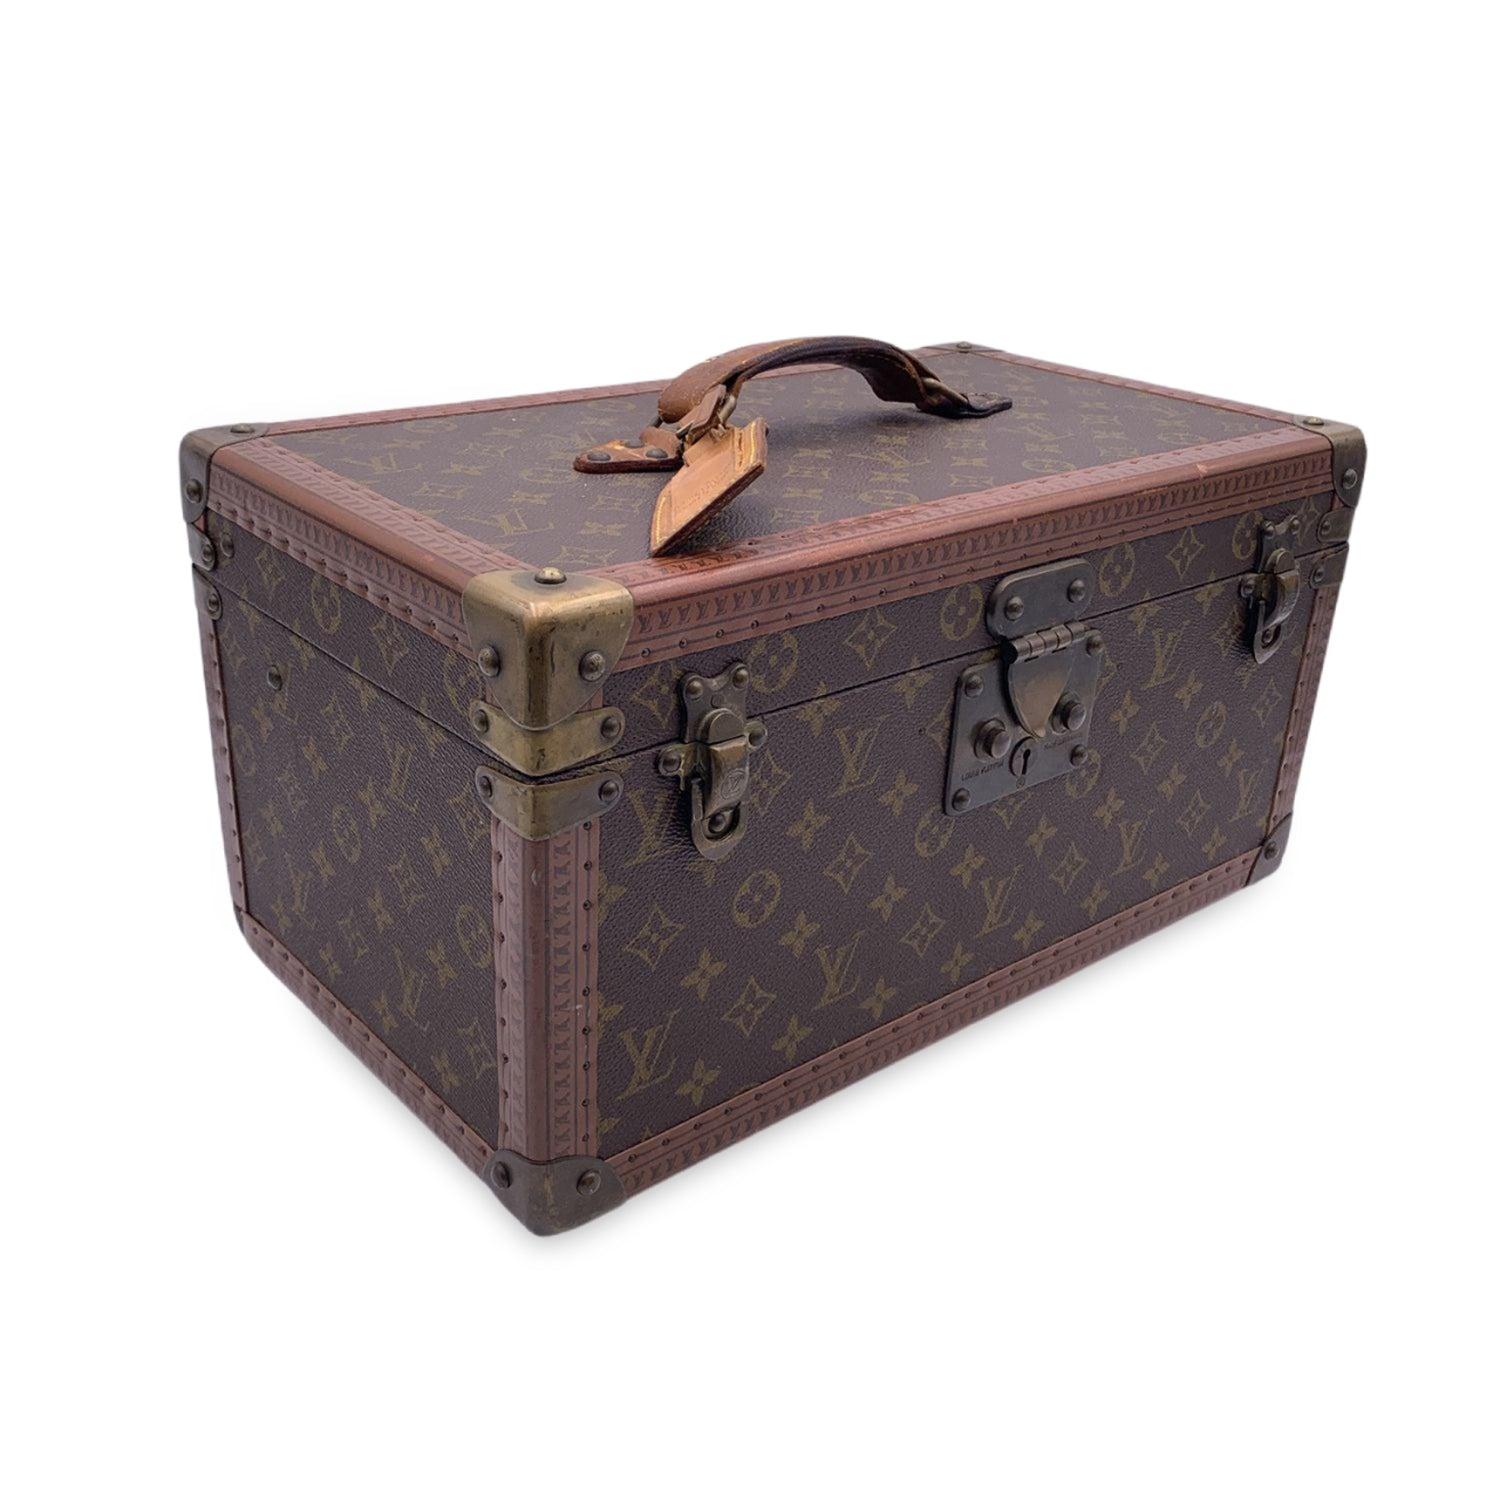 Prächtige Louis Vuitton Monogram 'Boite Bouteille et Glace' (auch 'Bottle and Ice box' genannt) Kosmetikreisetasche, mod. M21822, aus den 70er Jahren. Hergestellt aus zeitlosem Monogram Canvas mit Ledergriff, goldenen Messingteilen und Lederbesatz